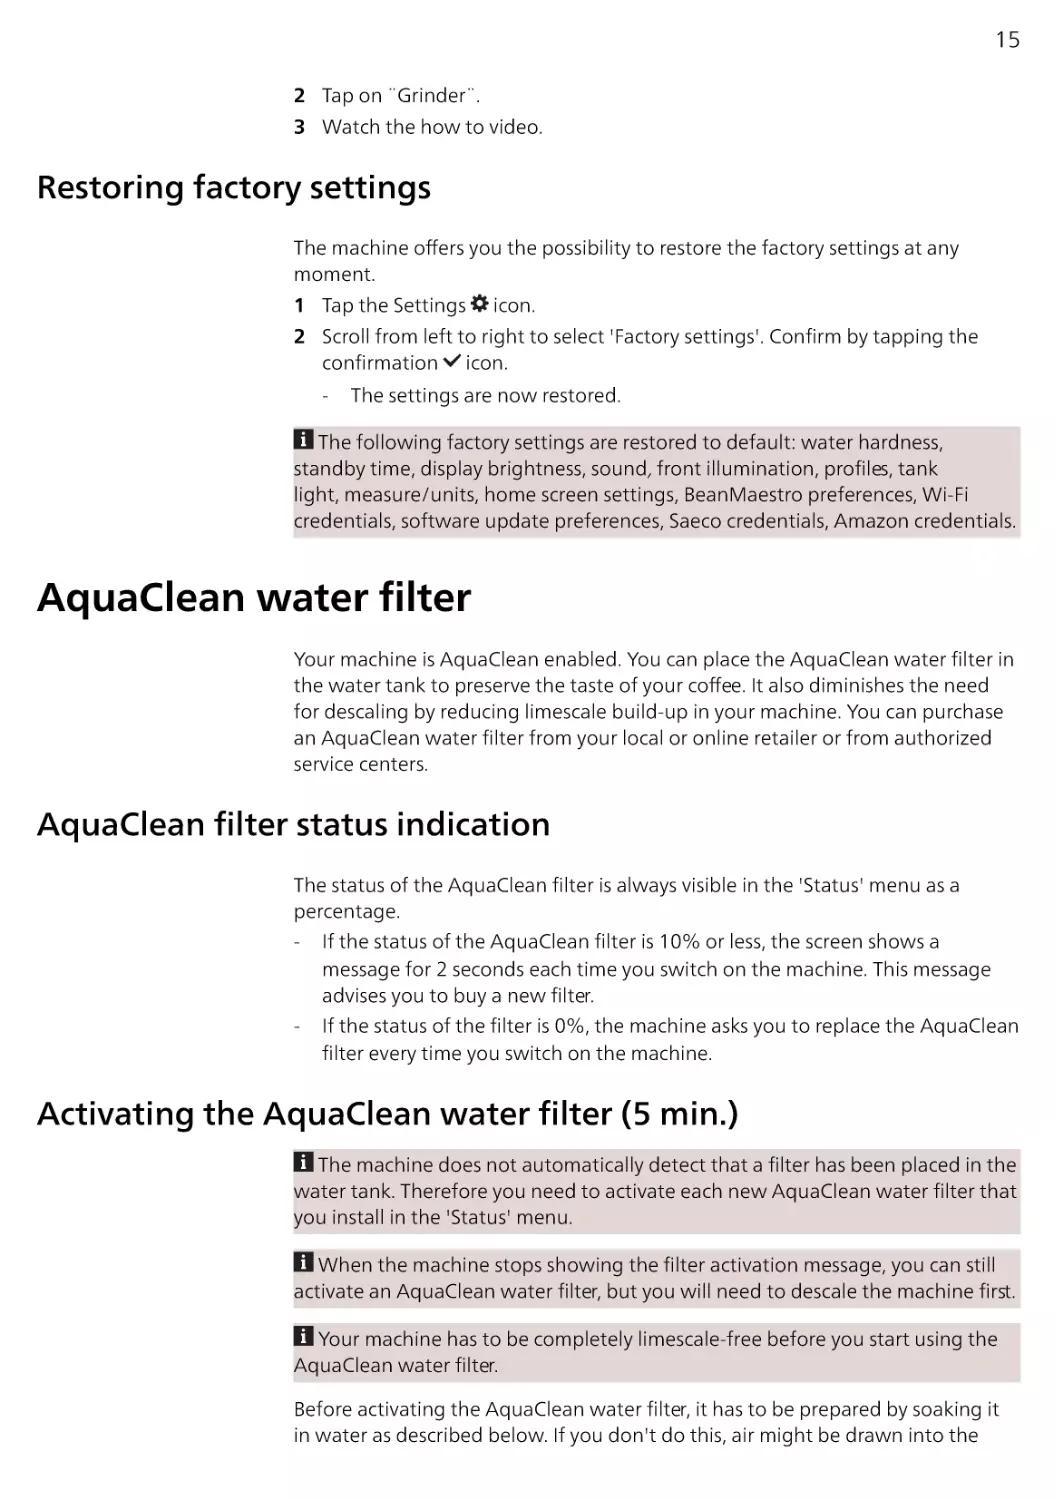 Restoring factory settings
AquaClean water filter
AquaClean filter status indication
Activating the AquaClean water filter (5 min.)